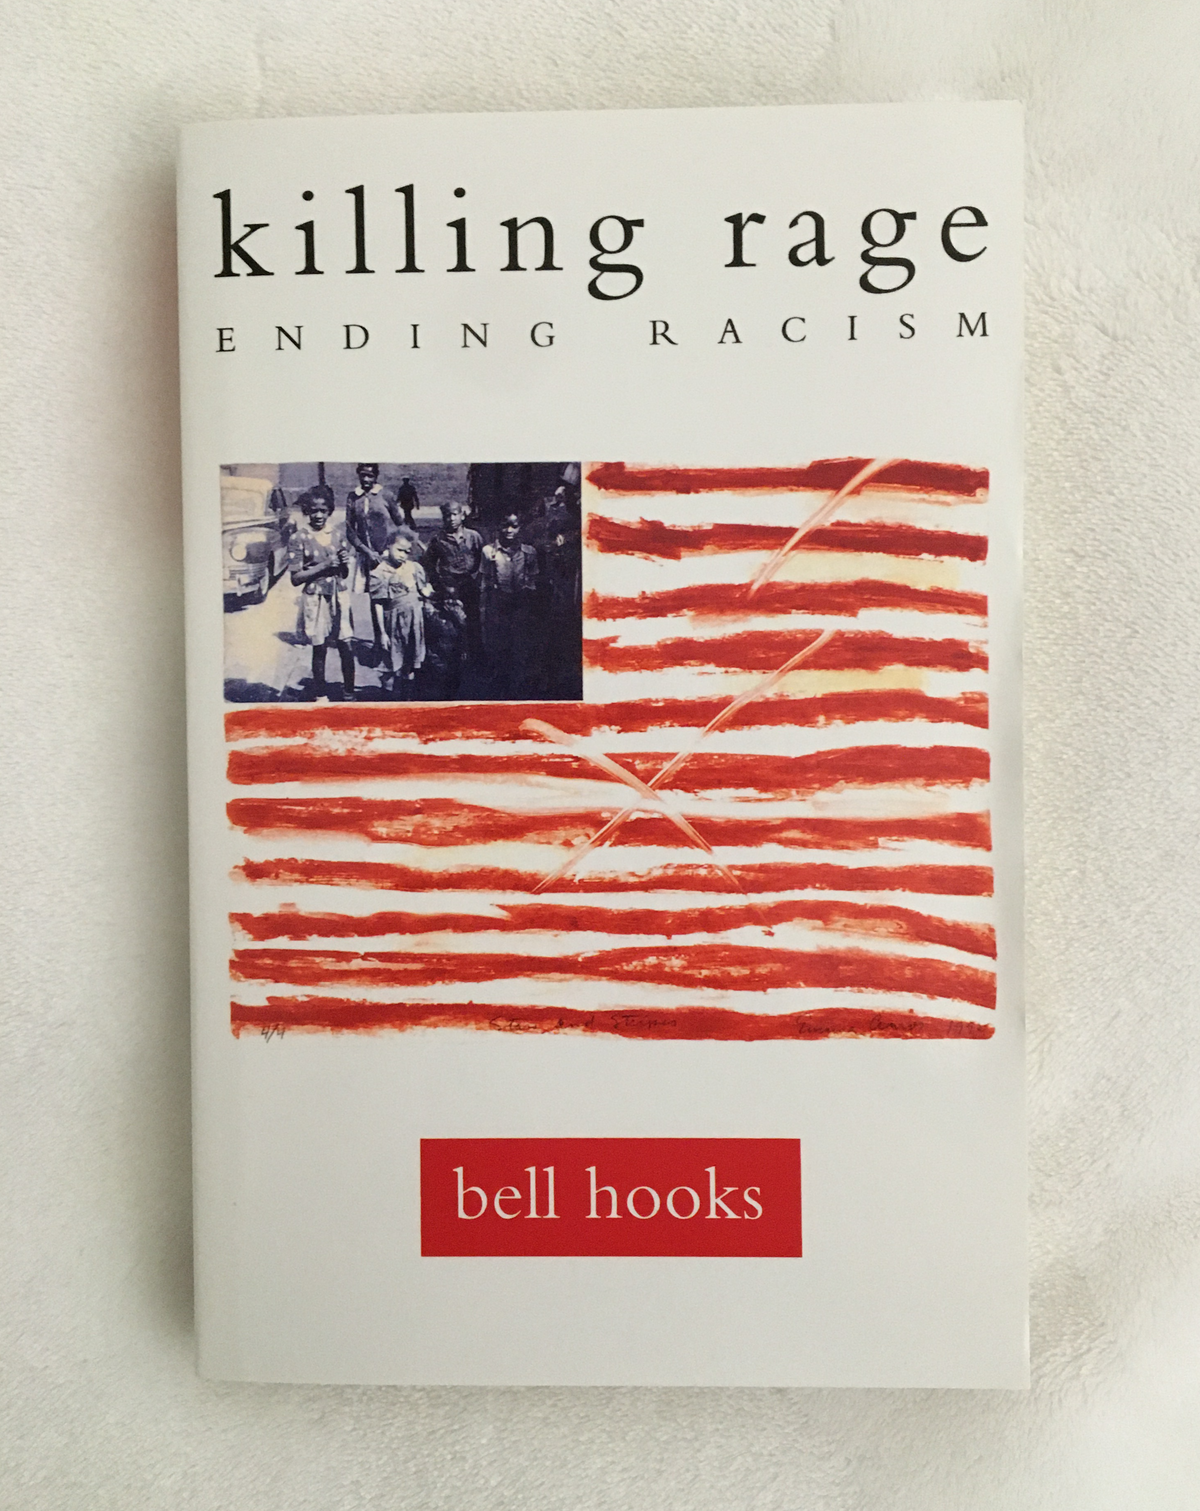 Killing Rage: Ending Racism by bell hooks, book, Ten Dollar Books, Ten Dollar Books